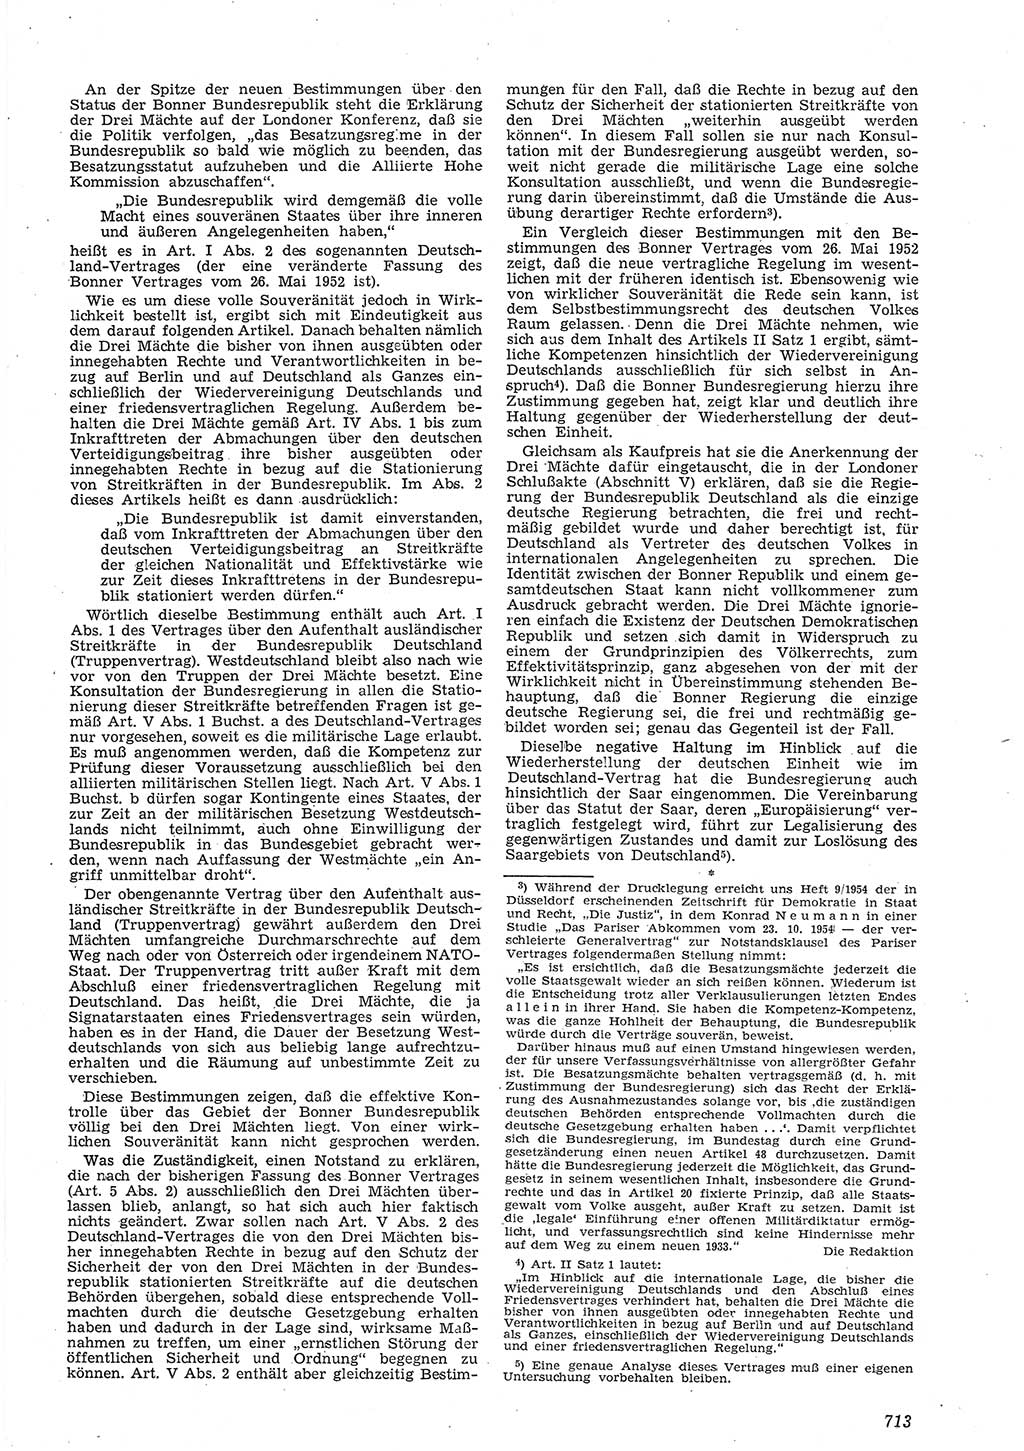 Neue Justiz (NJ), Zeitschrift für Recht und Rechtswissenschaft [Deutsche Demokratische Republik (DDR)], 8. Jahrgang 1954, Seite 713 (NJ DDR 1954, S. 713)